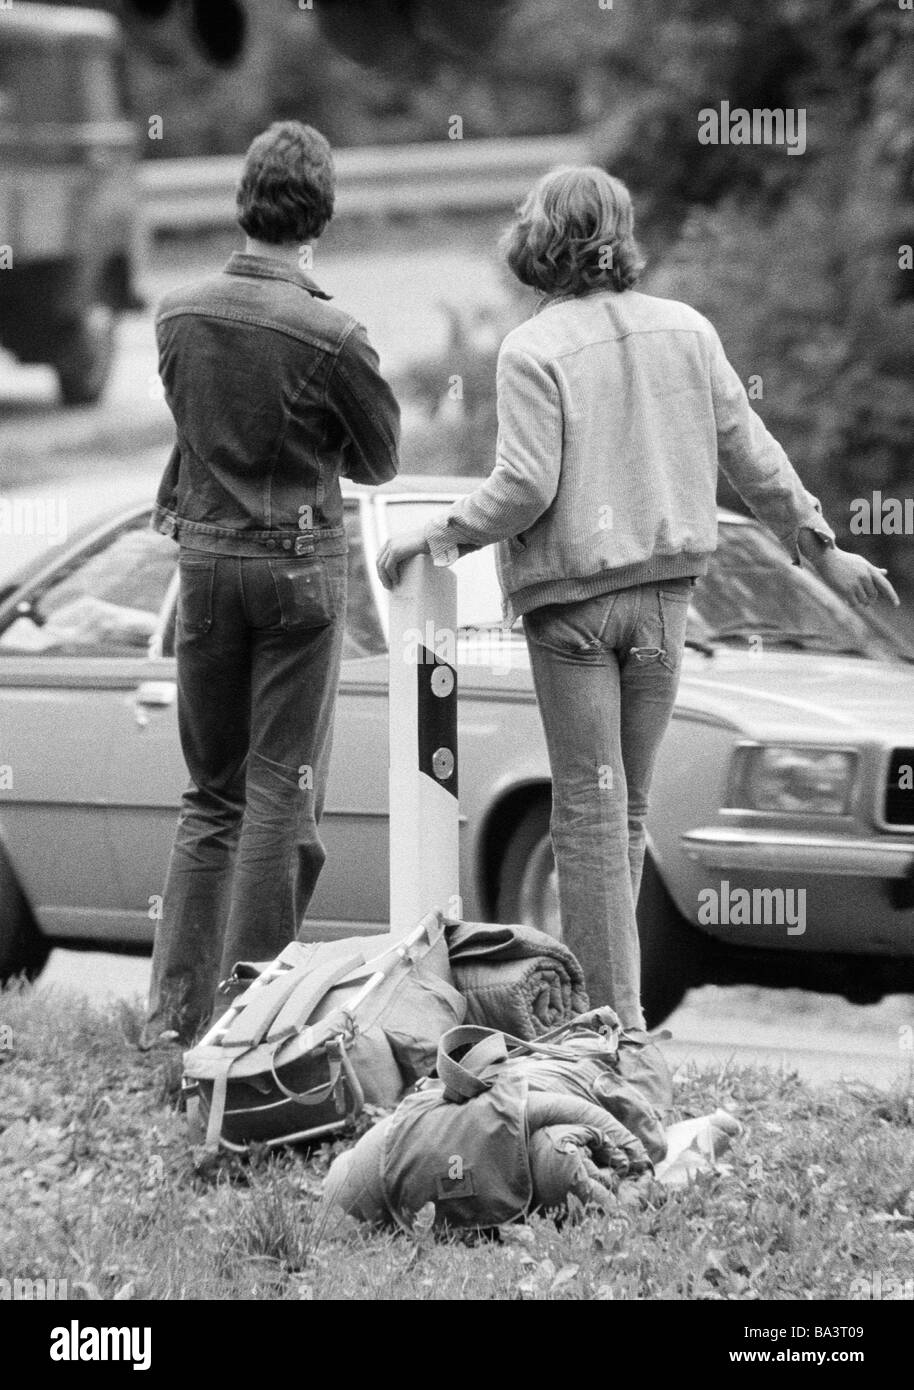 Negli anni settanta, foto in bianco e nero, persone, due giovani hitchhikers in piedi in una strada, bagagli, vista posteriore, una macchina passa dai 16 ai 20 anni Foto Stock